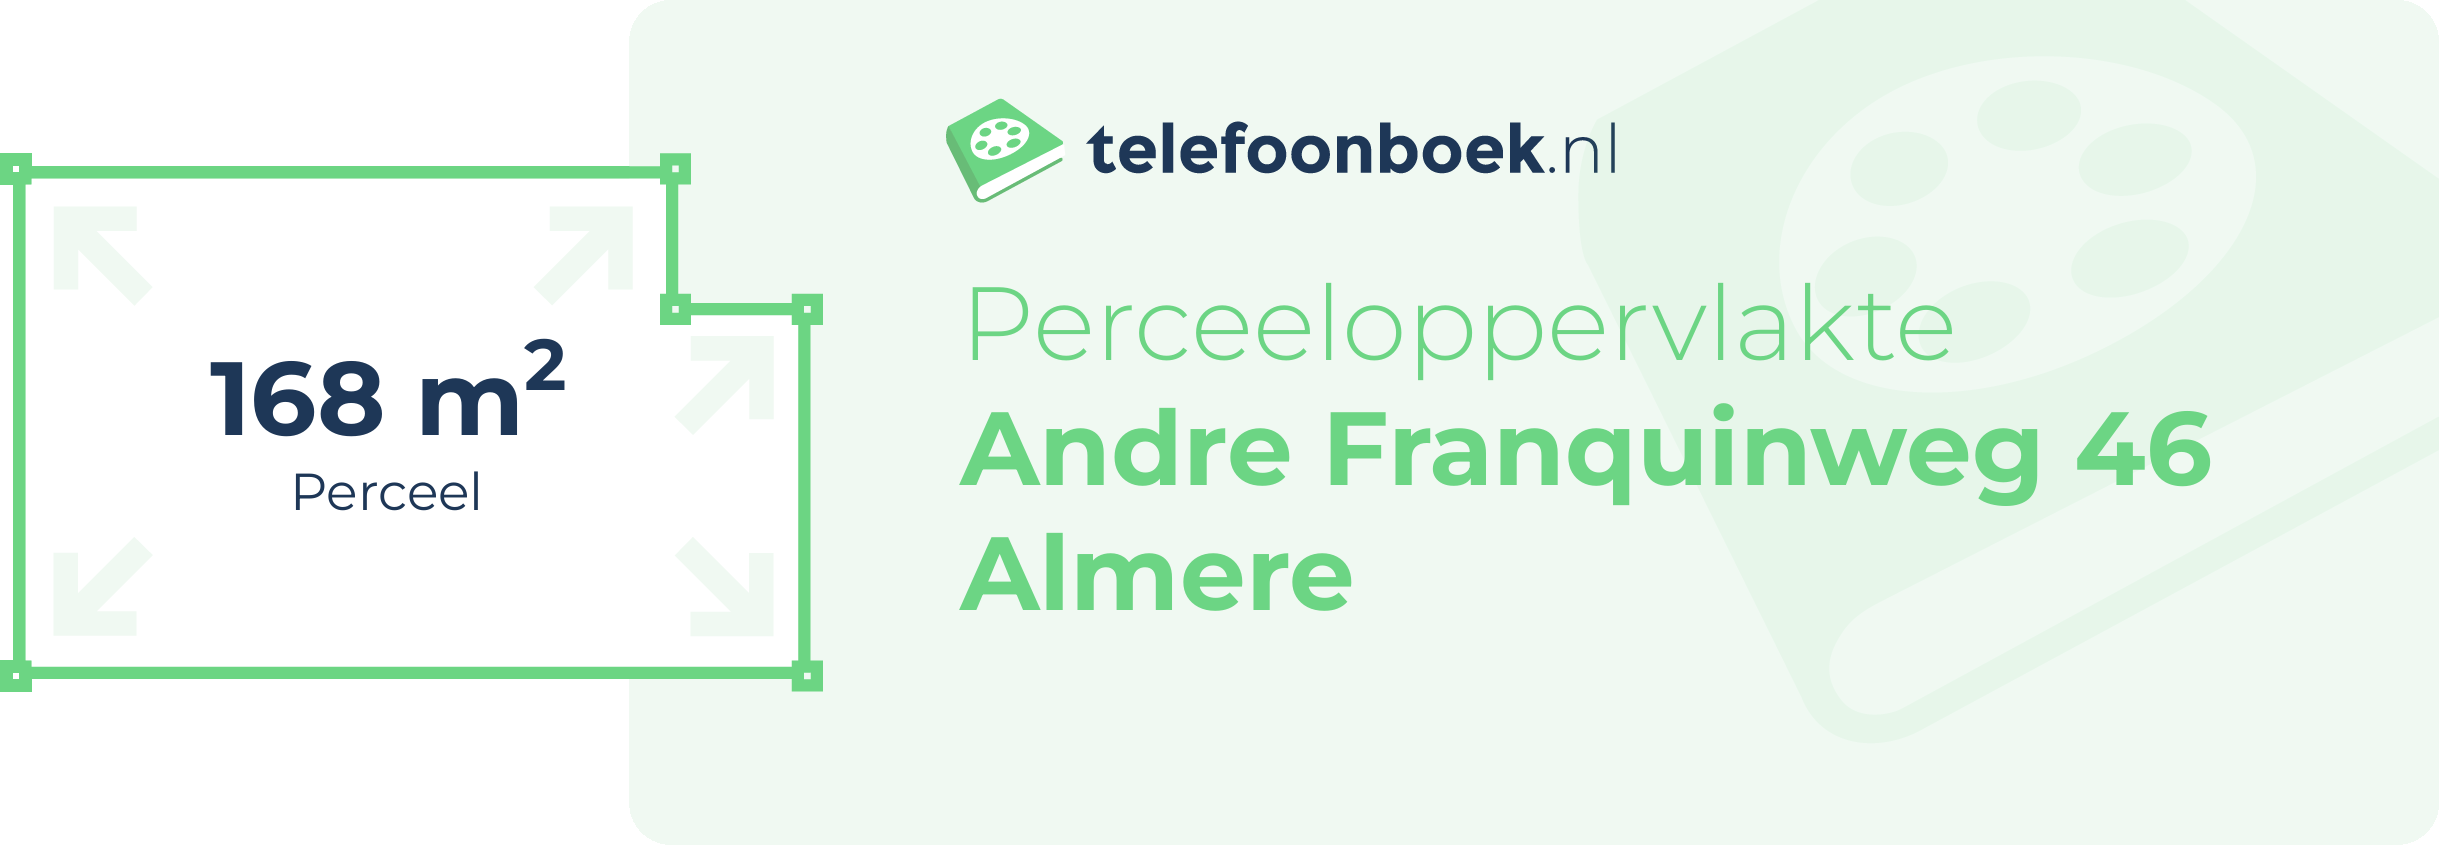 Perceeloppervlakte Andre Franquinweg 46 Almere